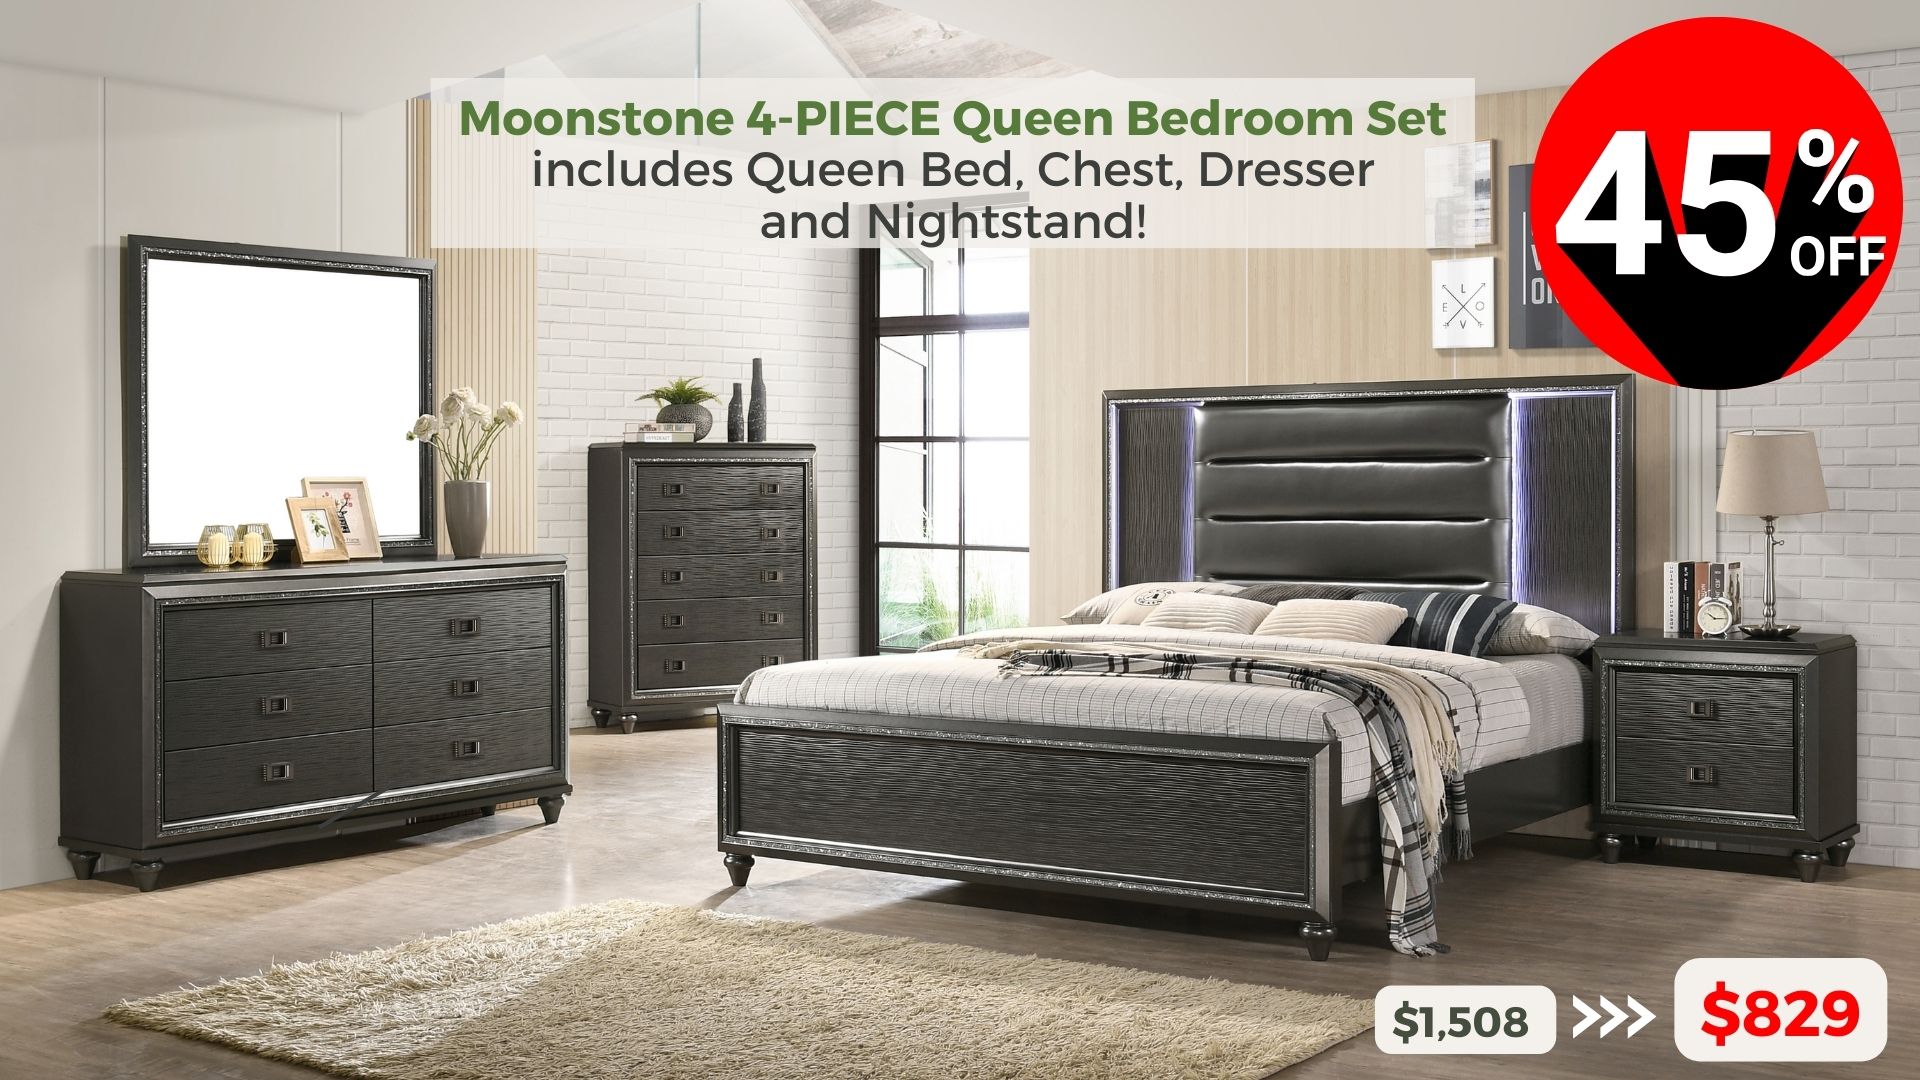 Moonstone 4-piece Queen Bedroom Set includes Queen Bed, Chest, Dresser and Nightstand. 45% off buy now $829